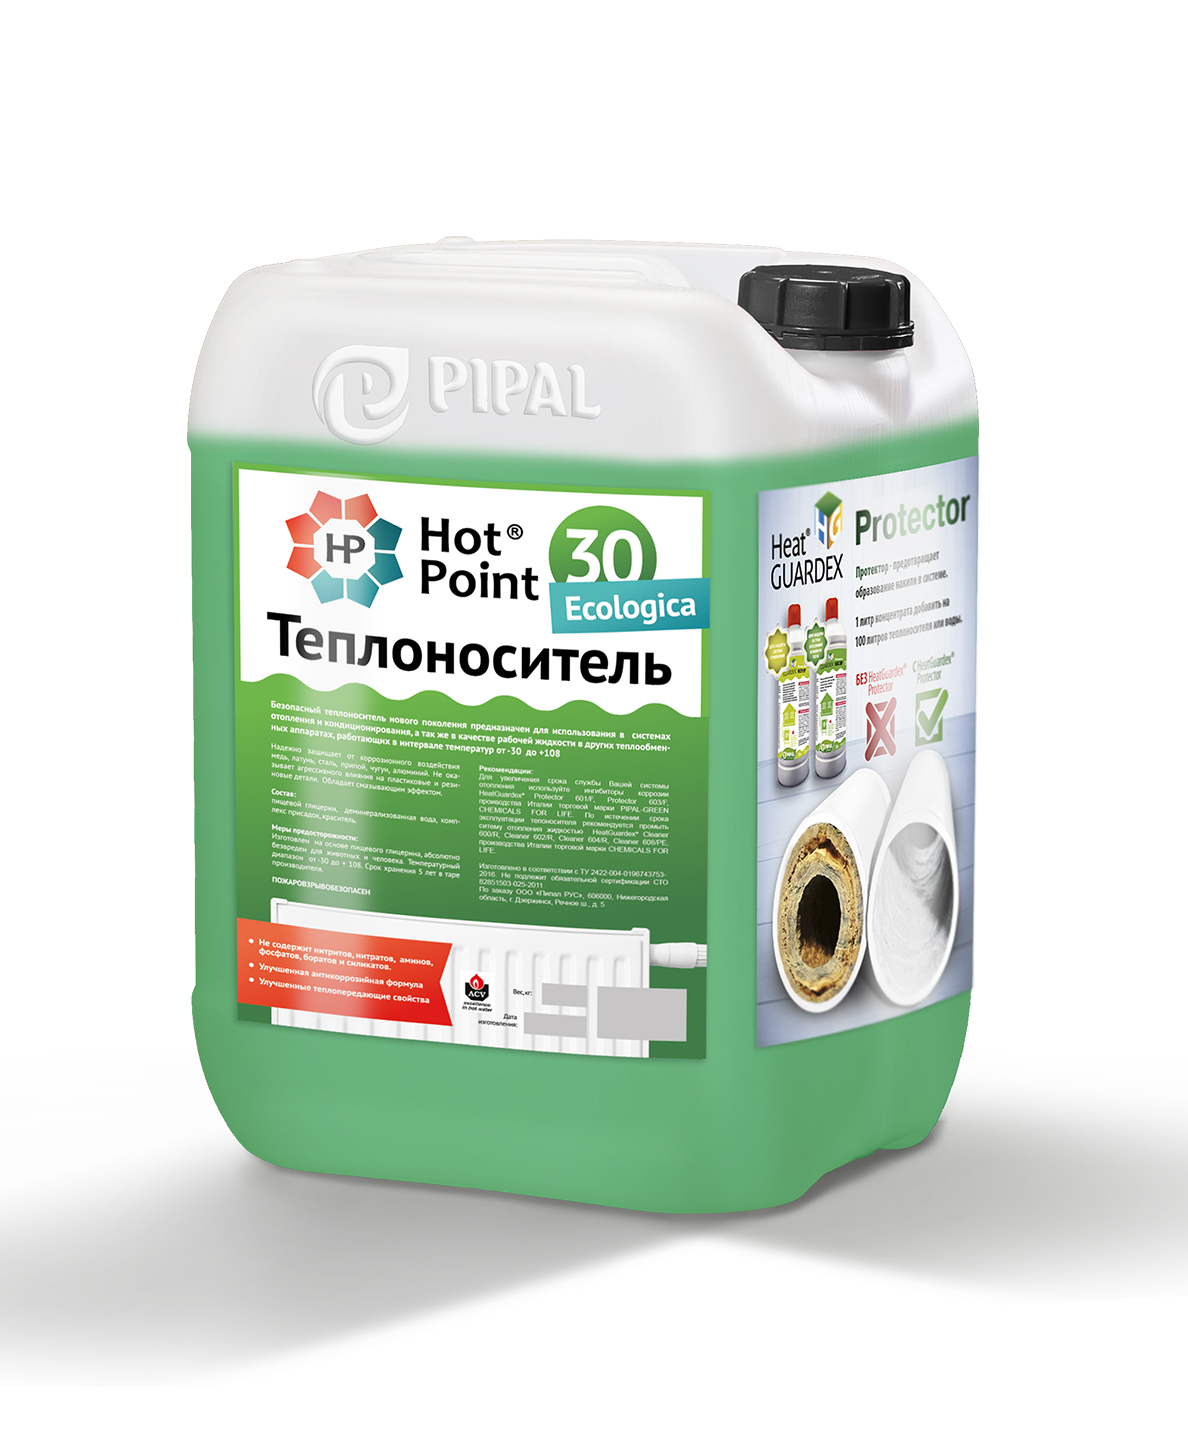 Теплоноситель HotPoint -30 Ecologica, глицериновый 220 кг (бочка)